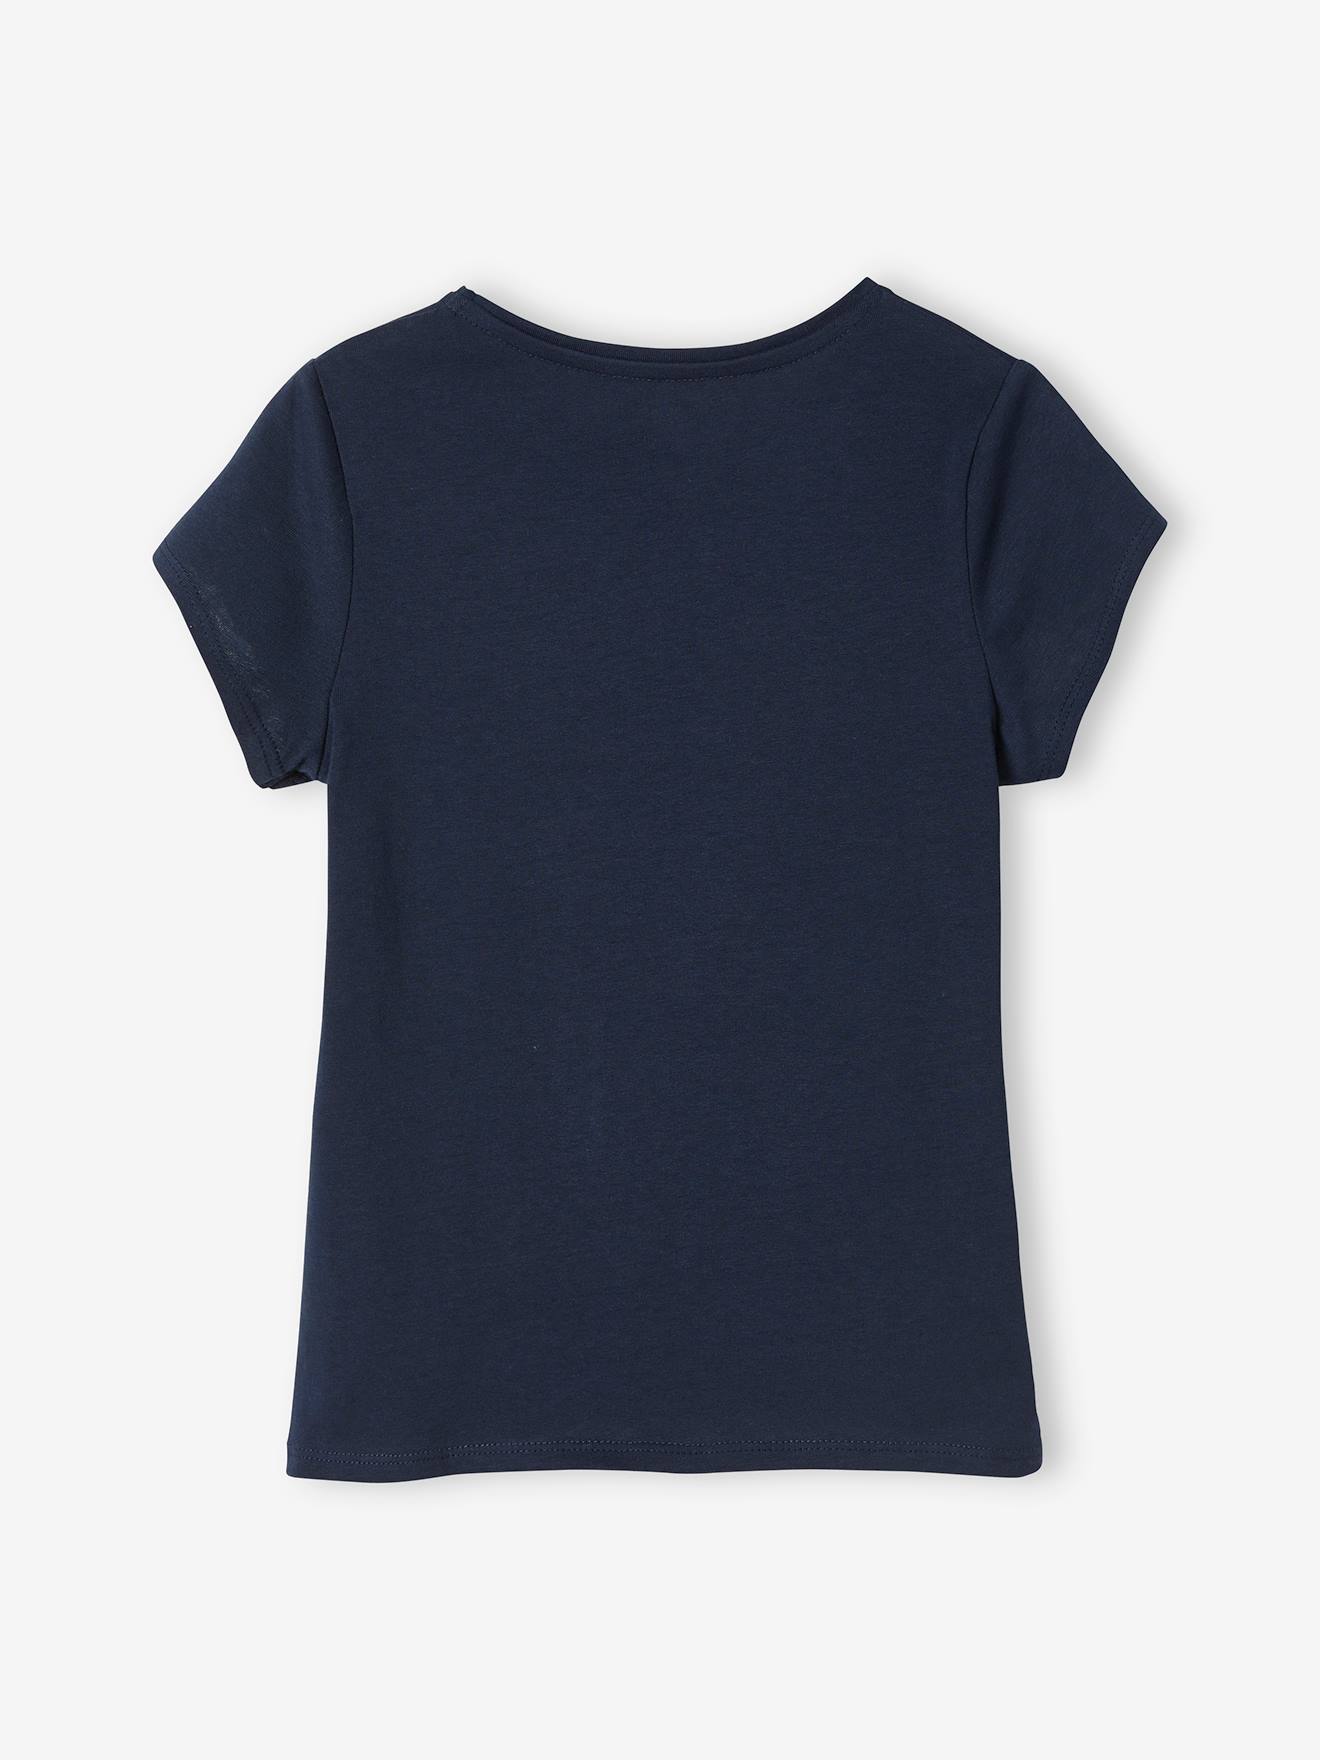 تی شرت دخترانه 40602 سایز 2 تا 14 سال مارک VertBaudet